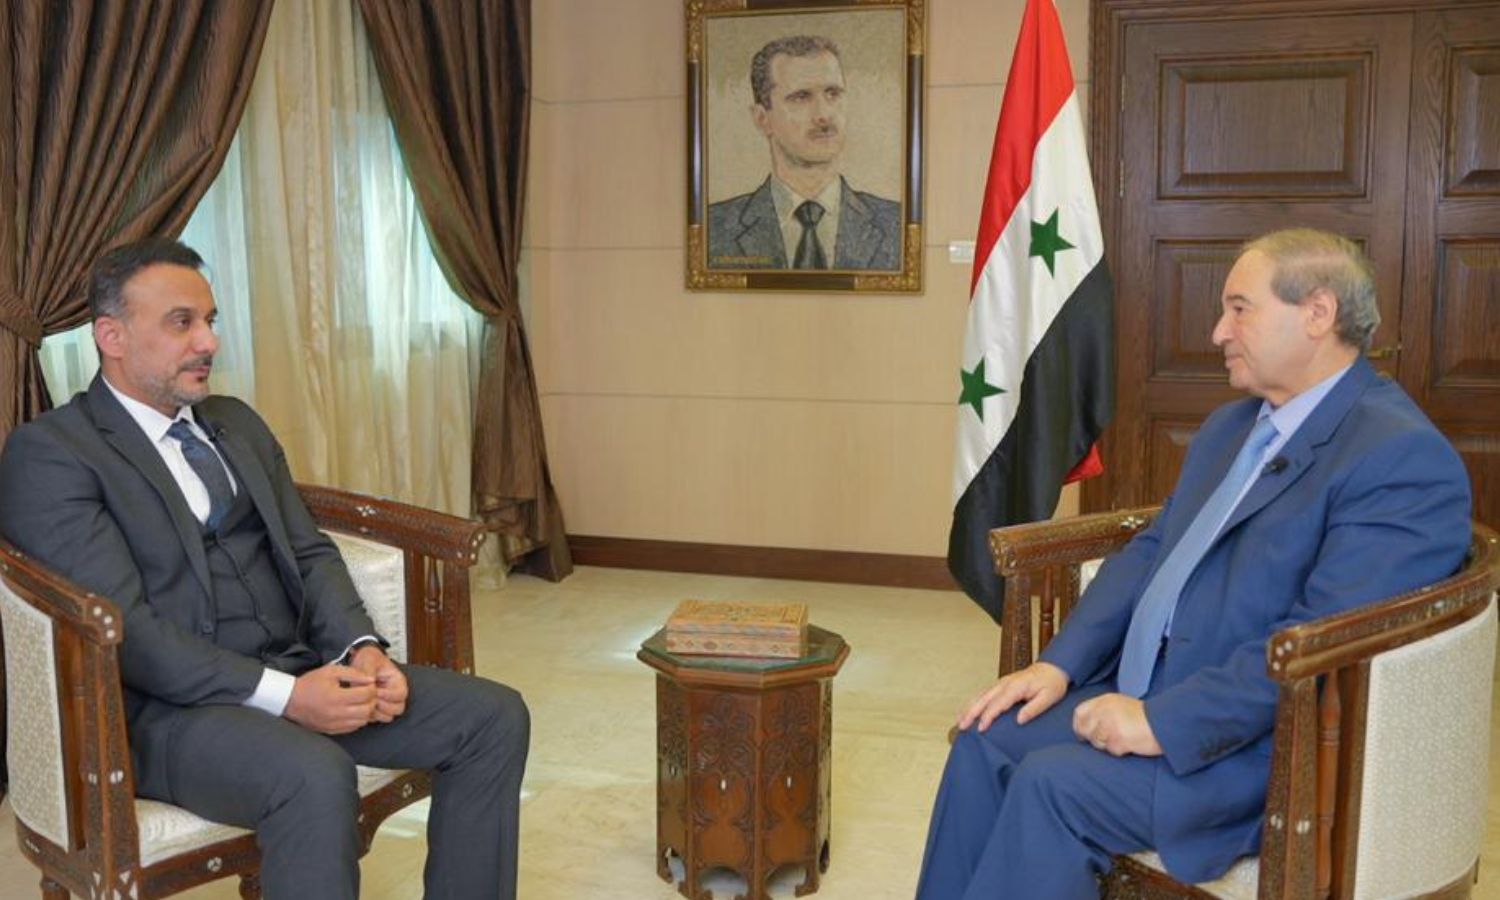 الإعلامي موسى الفرعي، مع وزير الخارجية السوري، فيصل المقداد في 23 من تشرين الأول 2022 (حساب موسى الفرعي في تويتر)